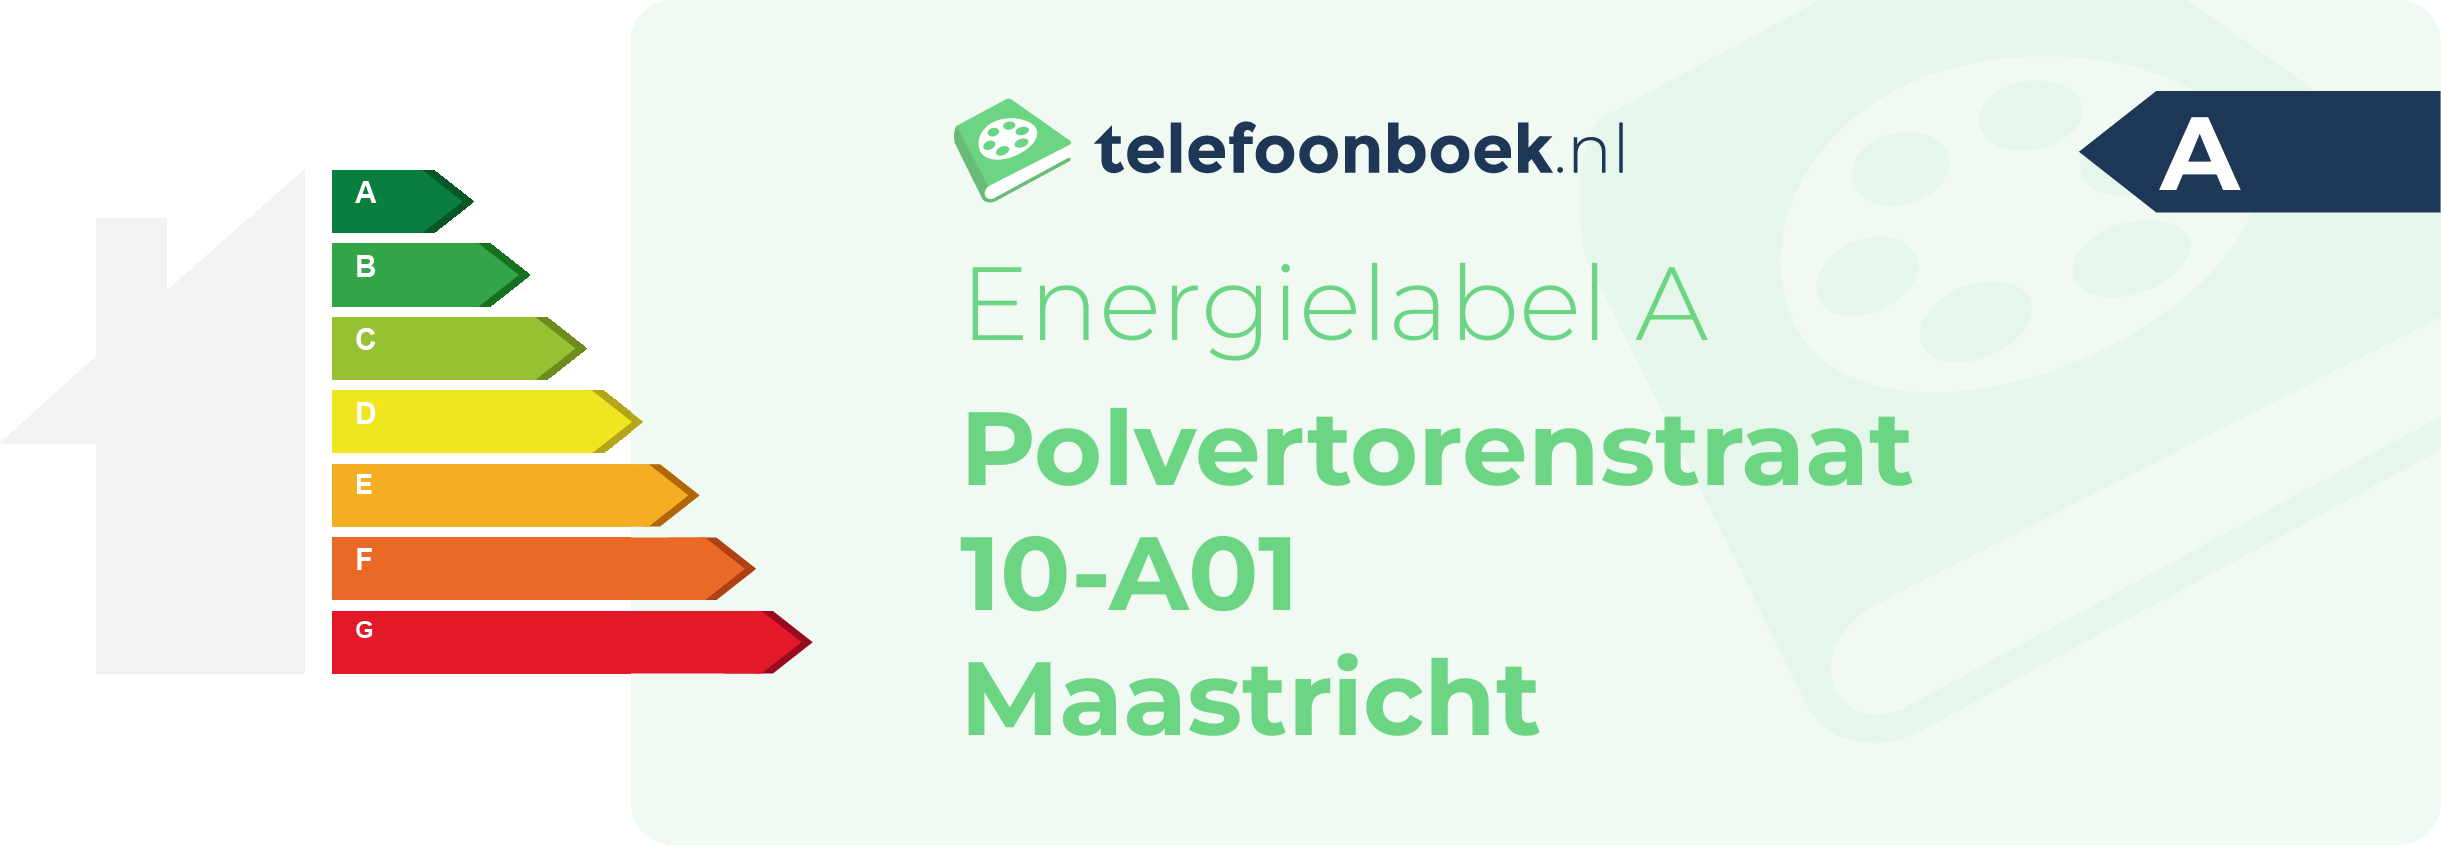 Energielabel Polvertorenstraat 10-A01 Maastricht